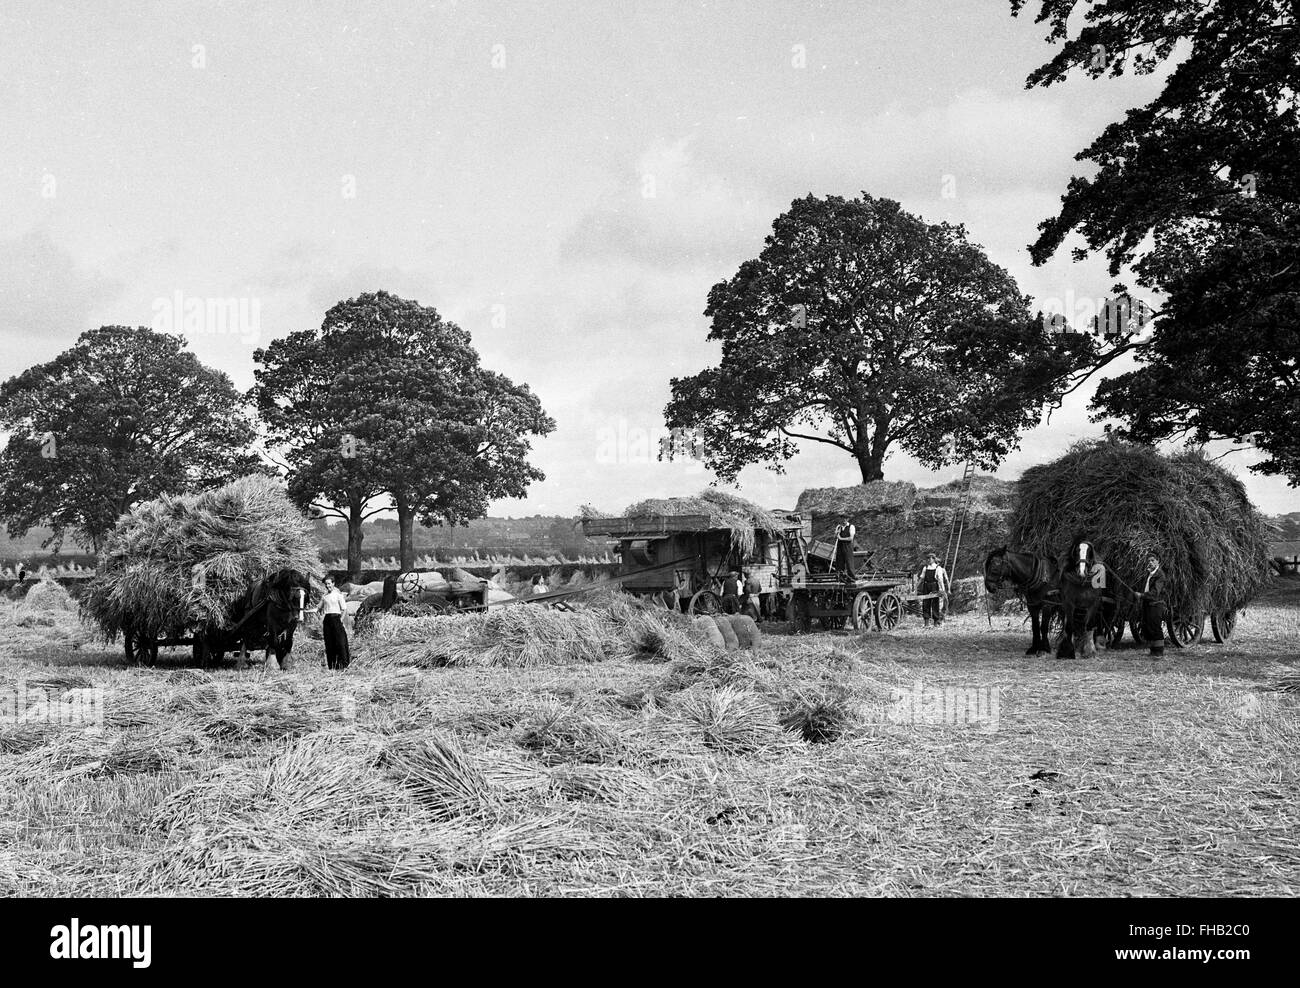 La récolte du foin en scène rurale en été Shropshire England Angleterre Uk 1950 Banque D'Images